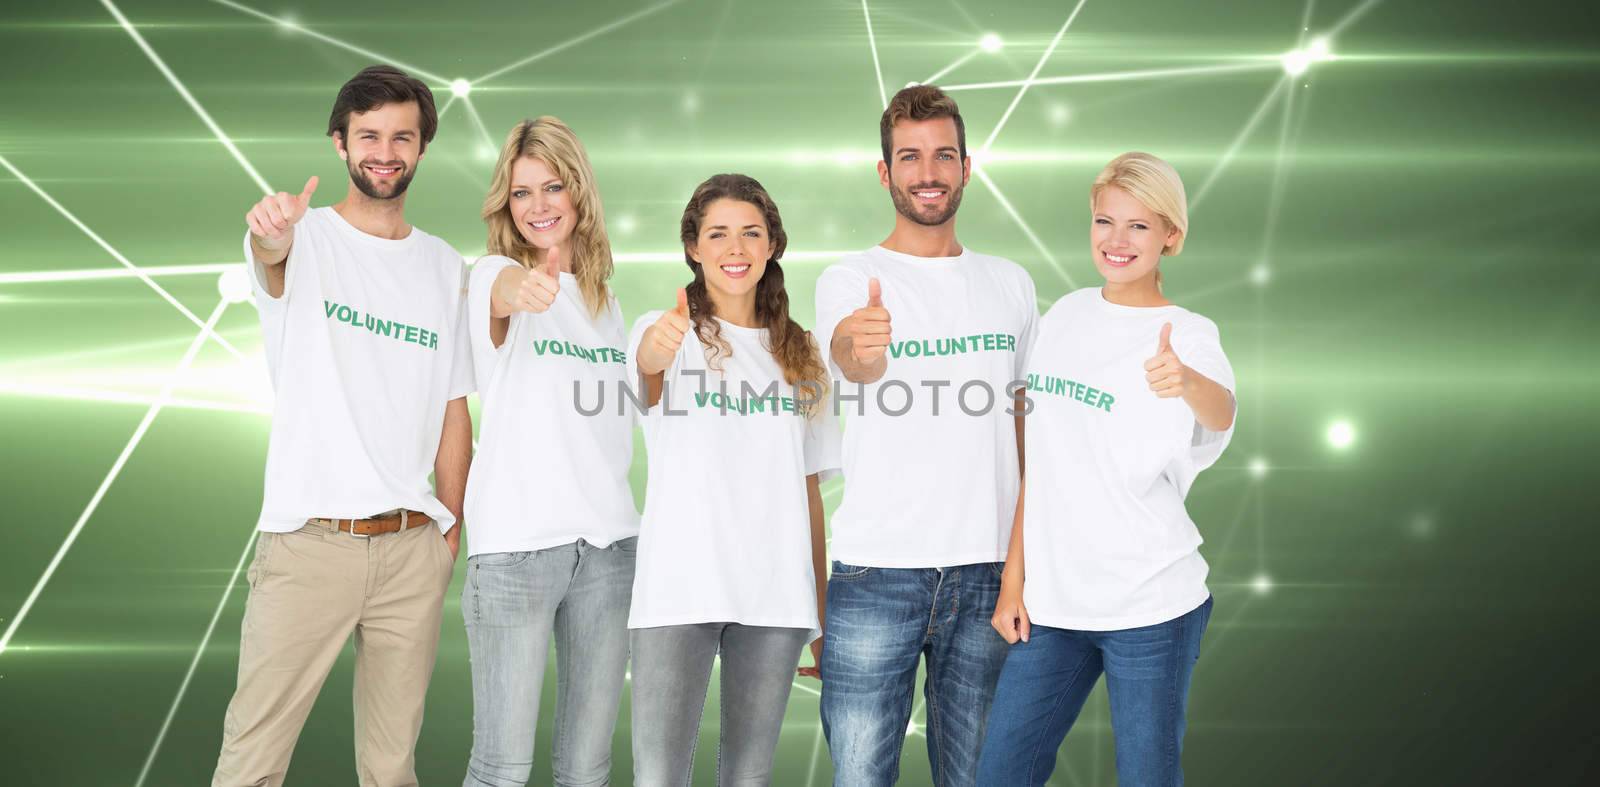 Group portrait of happy volunteers gesturing thumbs up against glowing geometric design